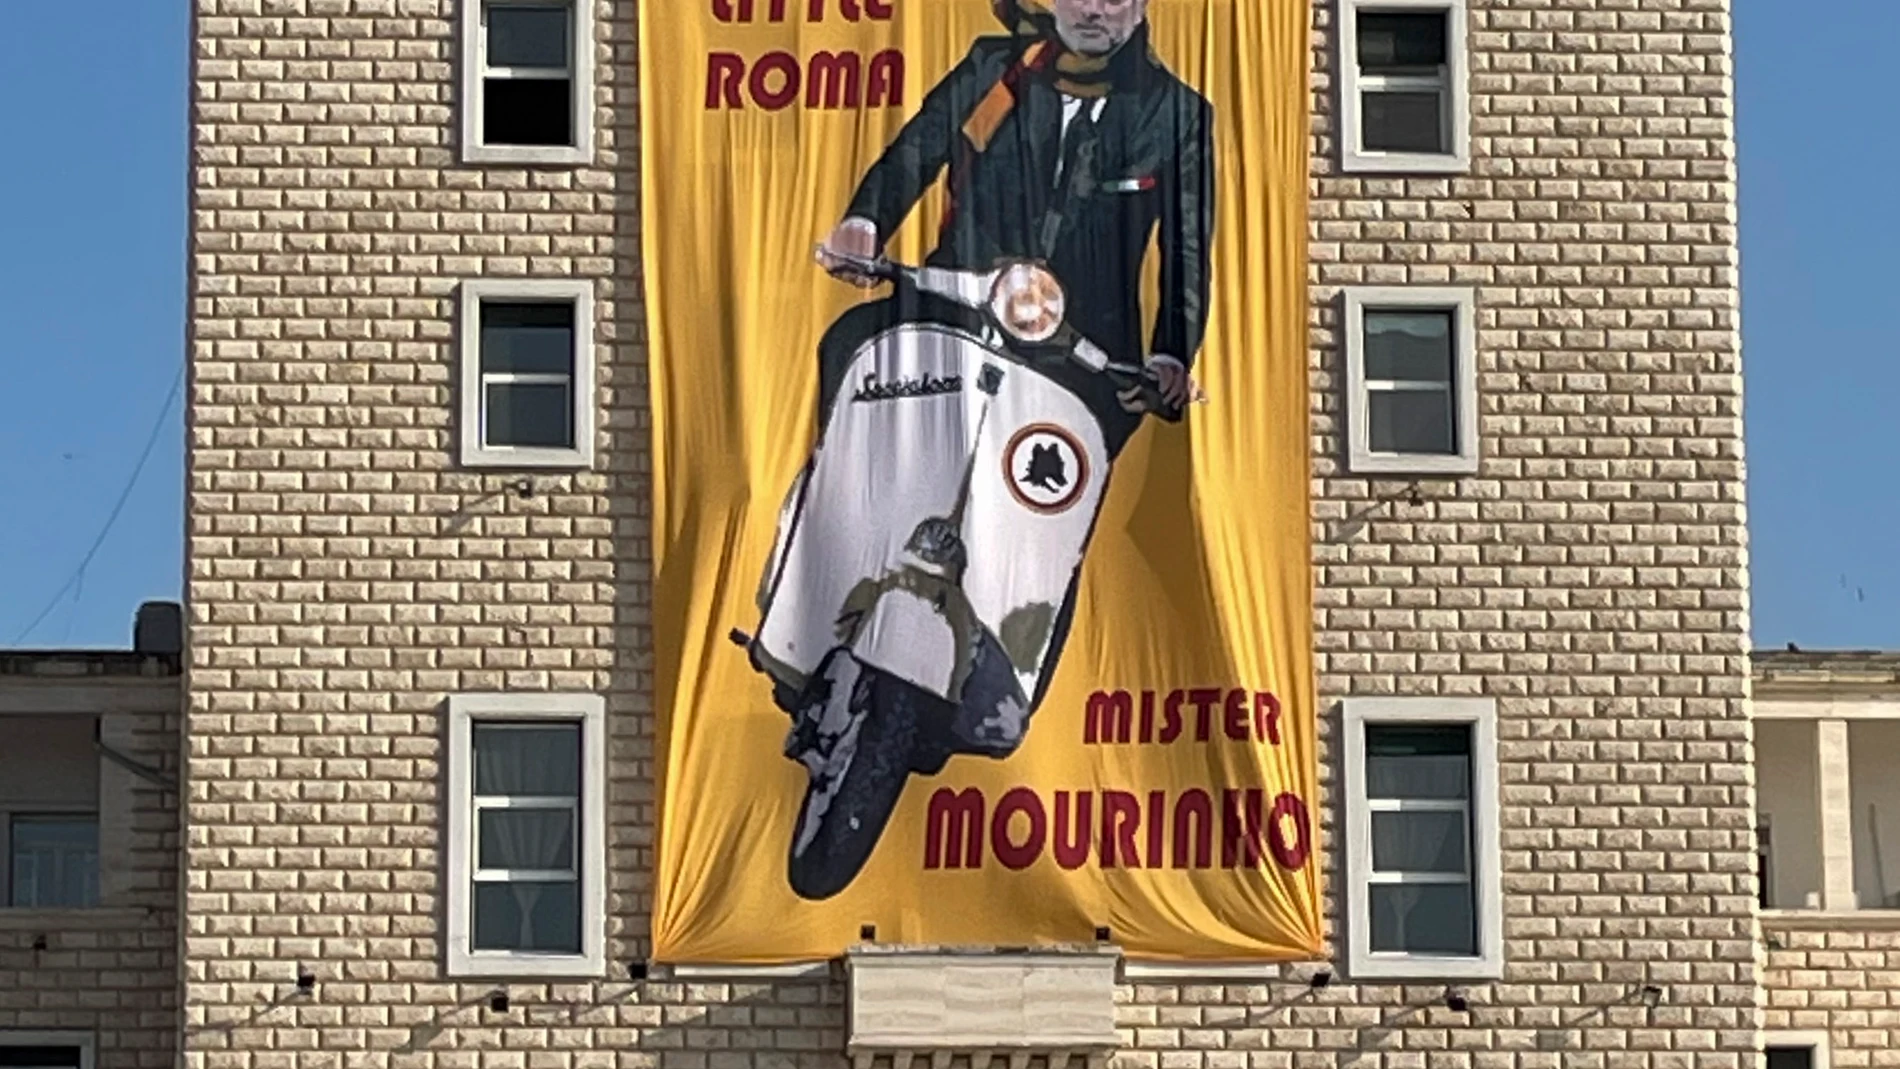 Cartel con los colores amarillo y rojo del club de fútbol de AS Roma dedicado a Mourinho, que está colgado en la fachada de la universidad Politécnica de Tirana